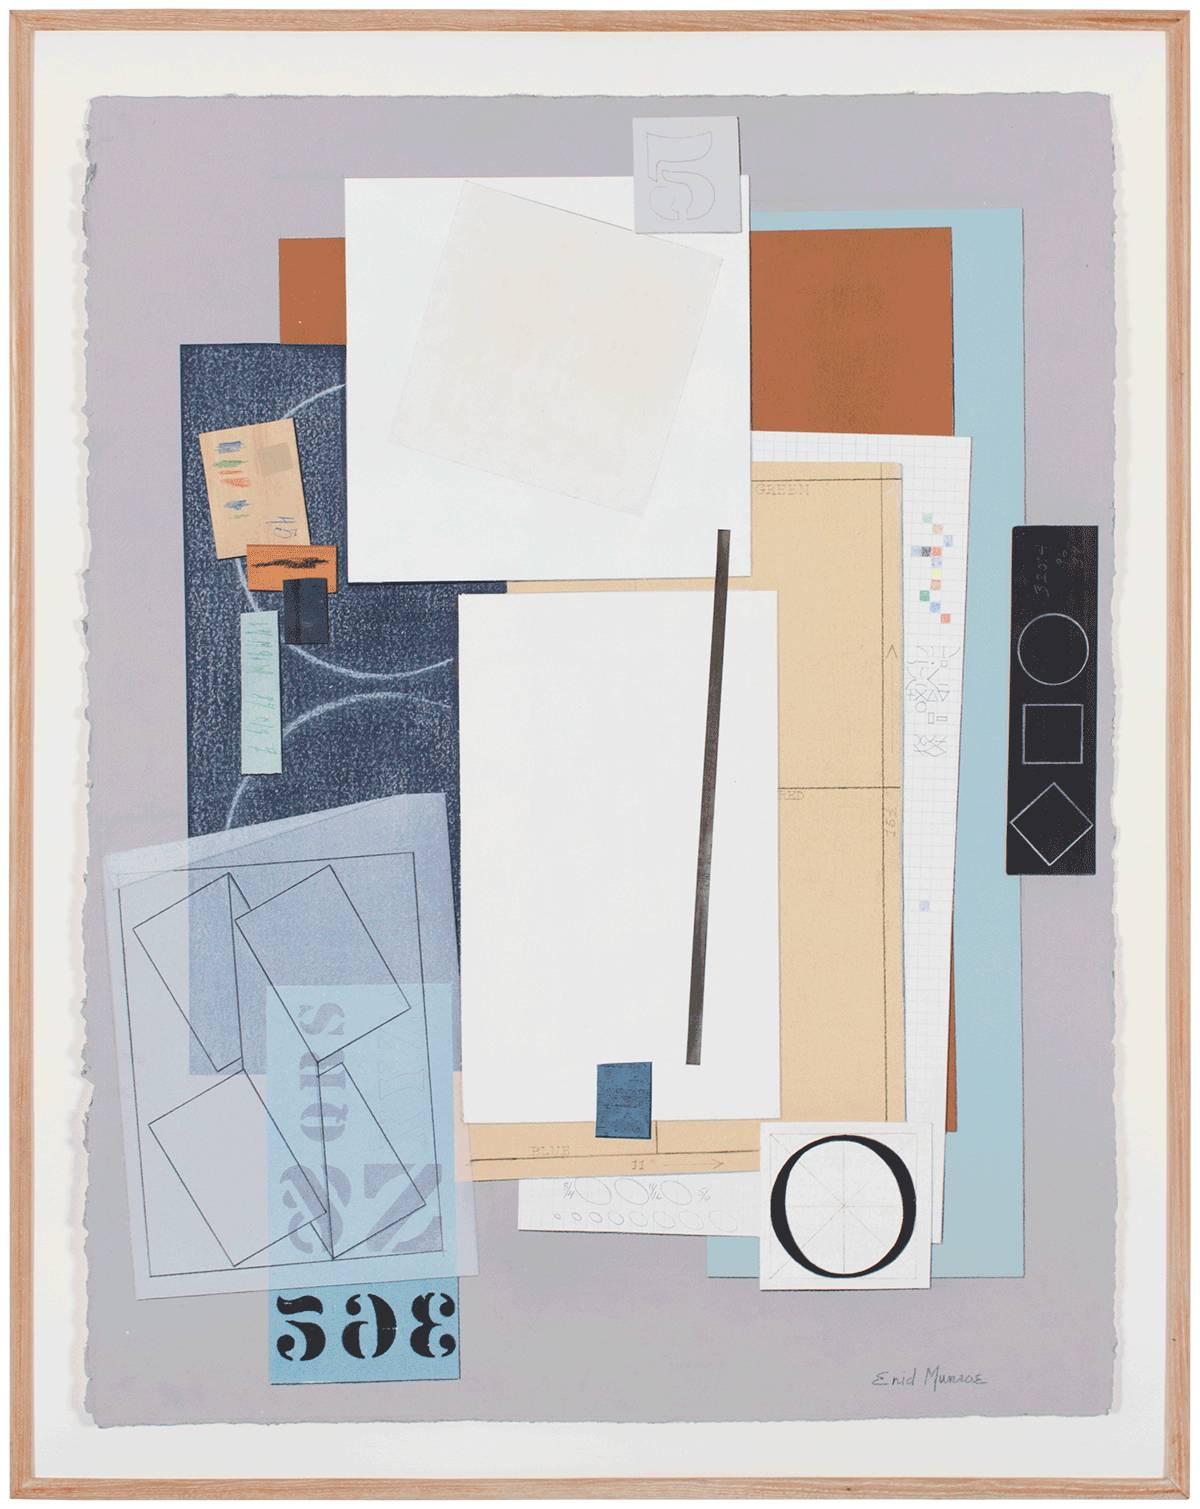 Abstrakte kubistische Komposition Collage Bleistift Buchstaben Nummern Assemblage (Amerikanische Moderne), Mixed Media Art, von Enid Munroe